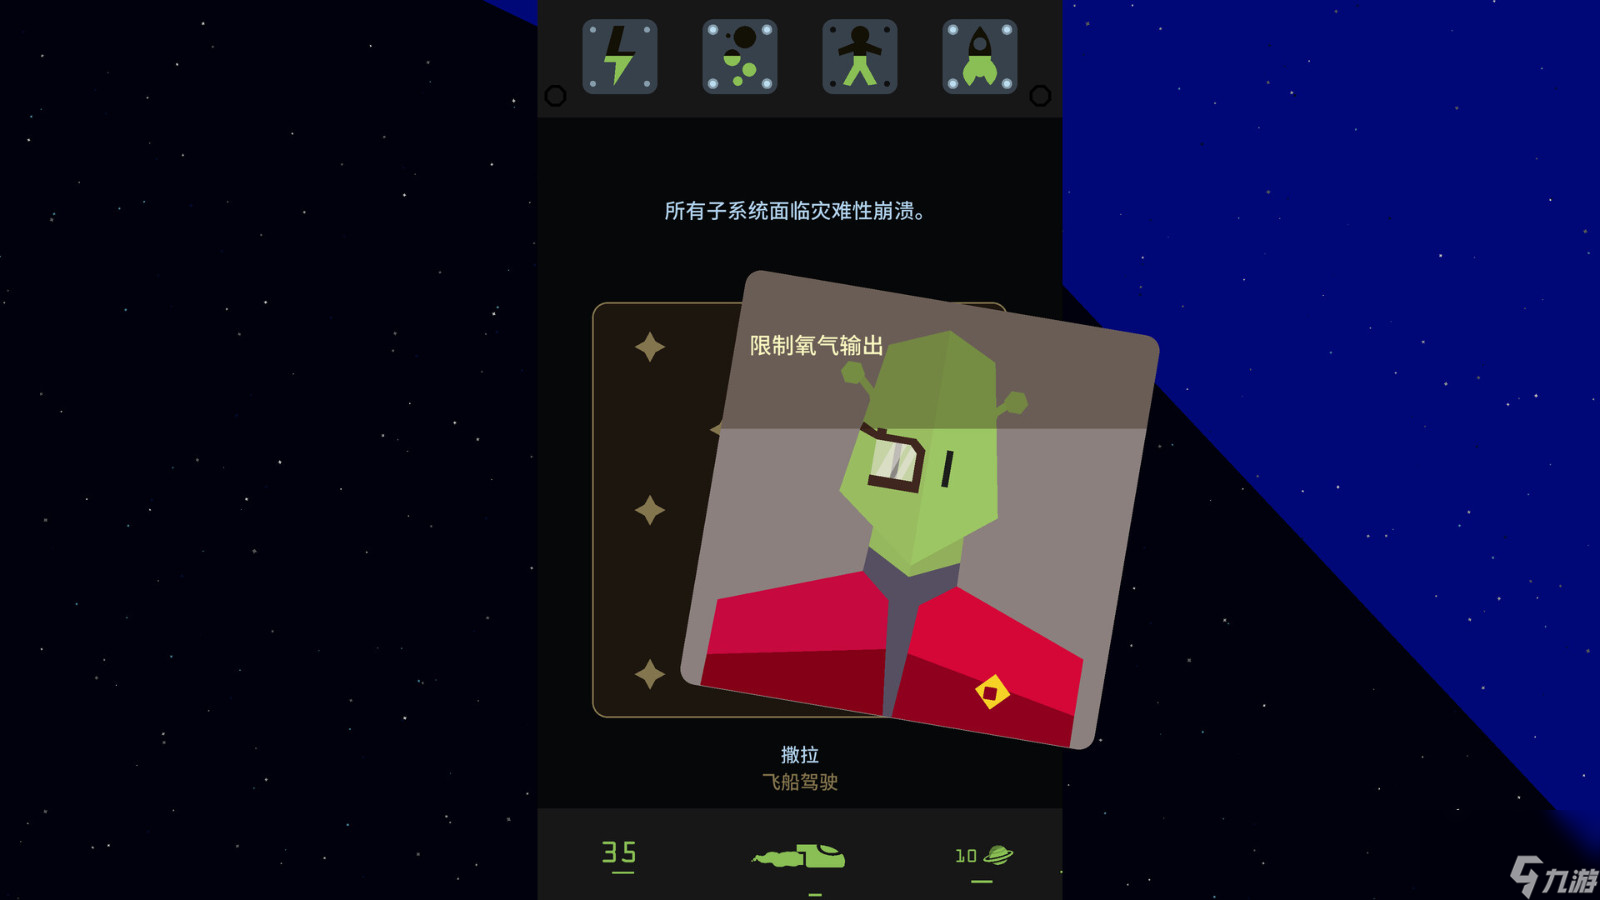 《王权》系列最新巨作《王权：星途》Steam页面上线 支持简繁体中文